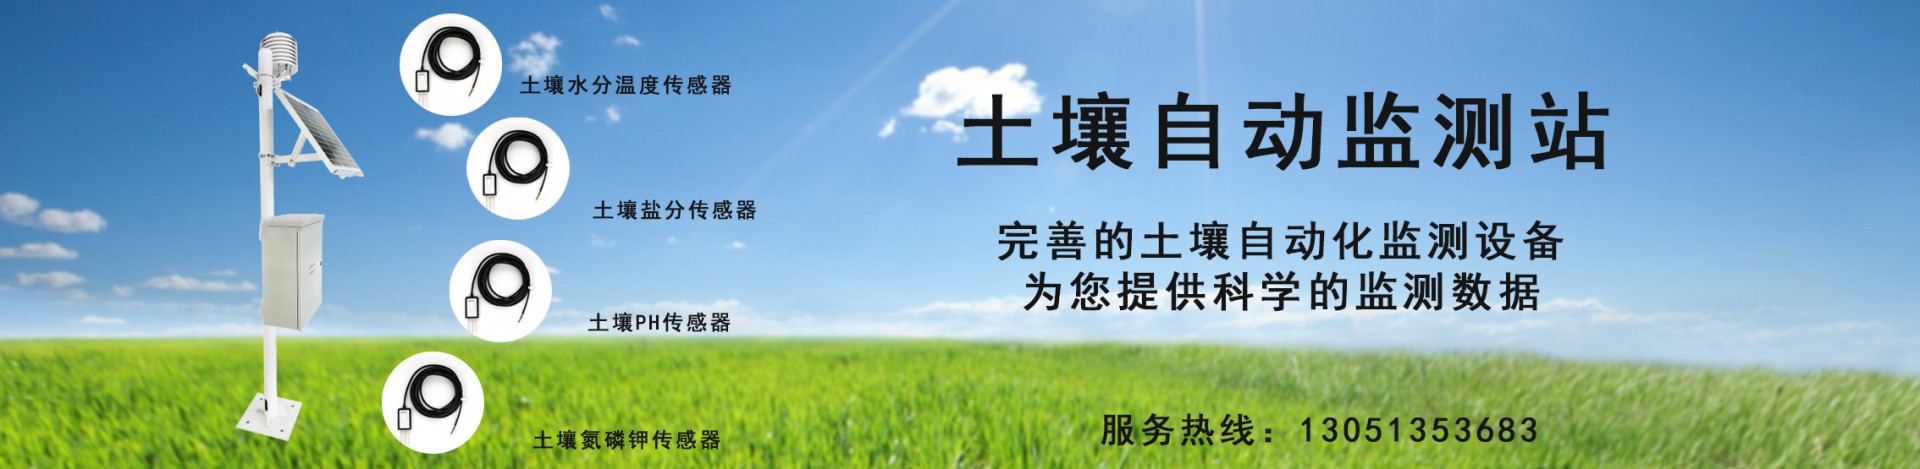 树木生长监测系统、植物茎流系统、土壤蒸渗仪、气象站等-东方鑫鸿（北京）科技有限公司